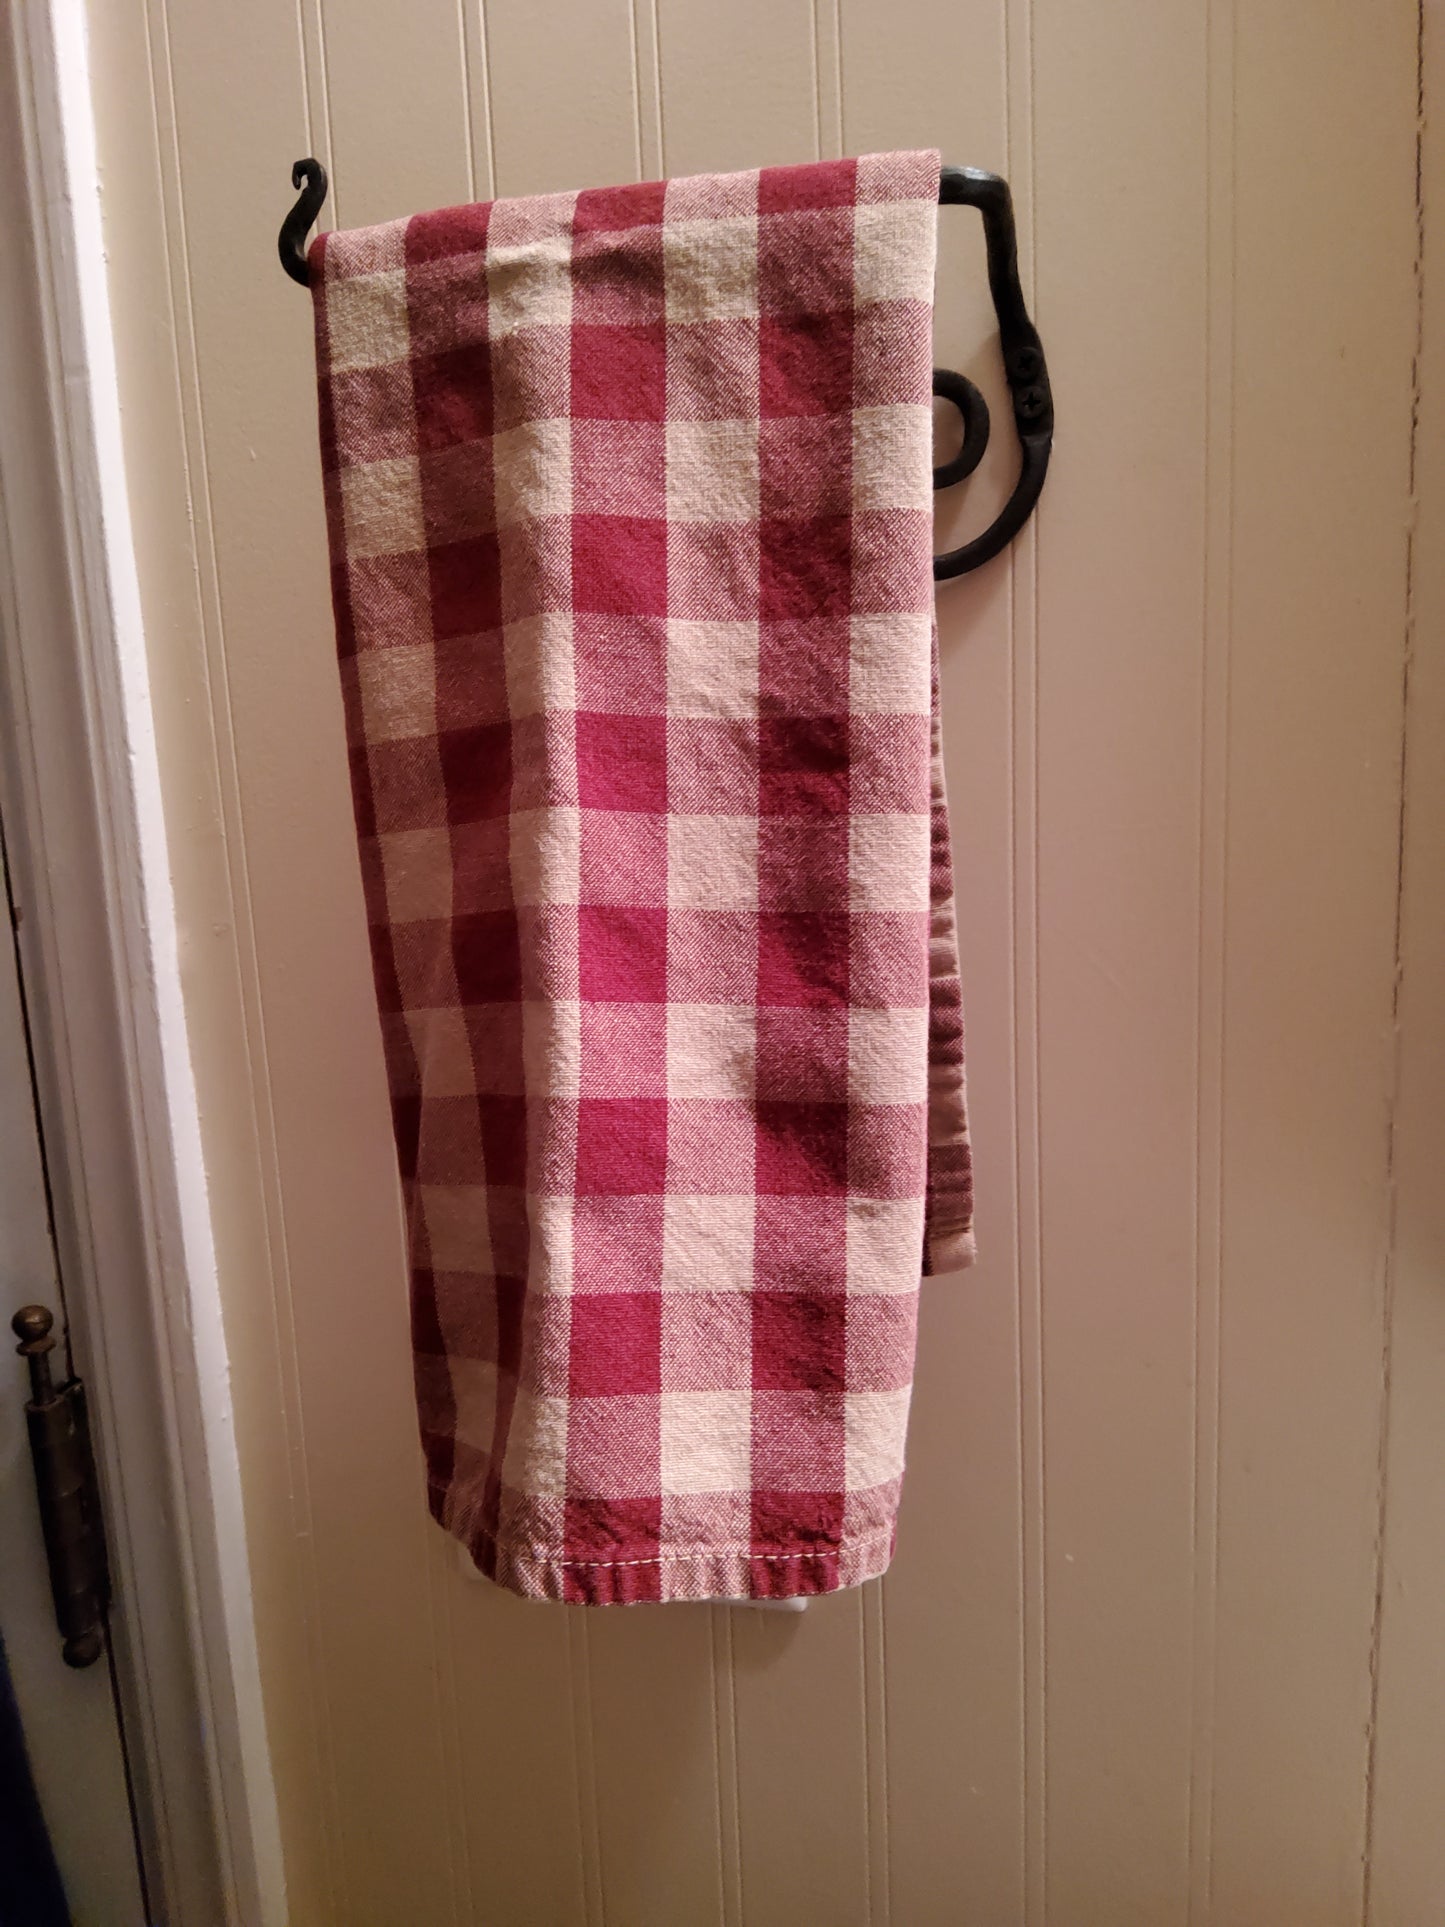 Towel  Holder